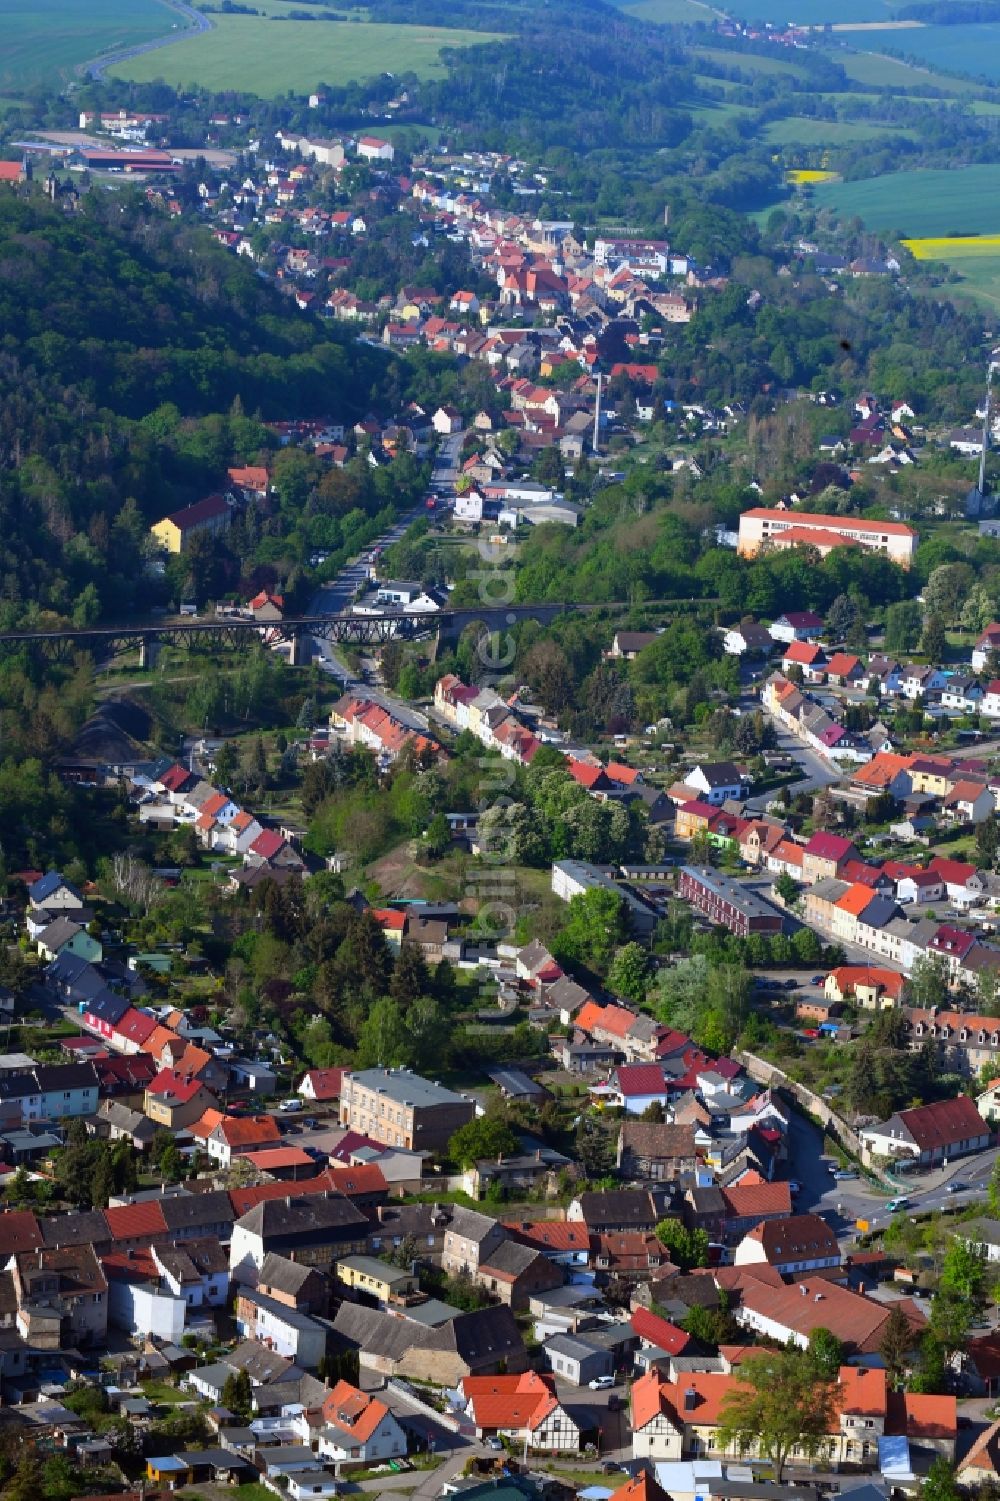 Luftbild Mansfeld - Ortsansicht im Ortsteil Leimbach in Mansfeld im Bundesland Sachsen-Anhalt, Deutschland